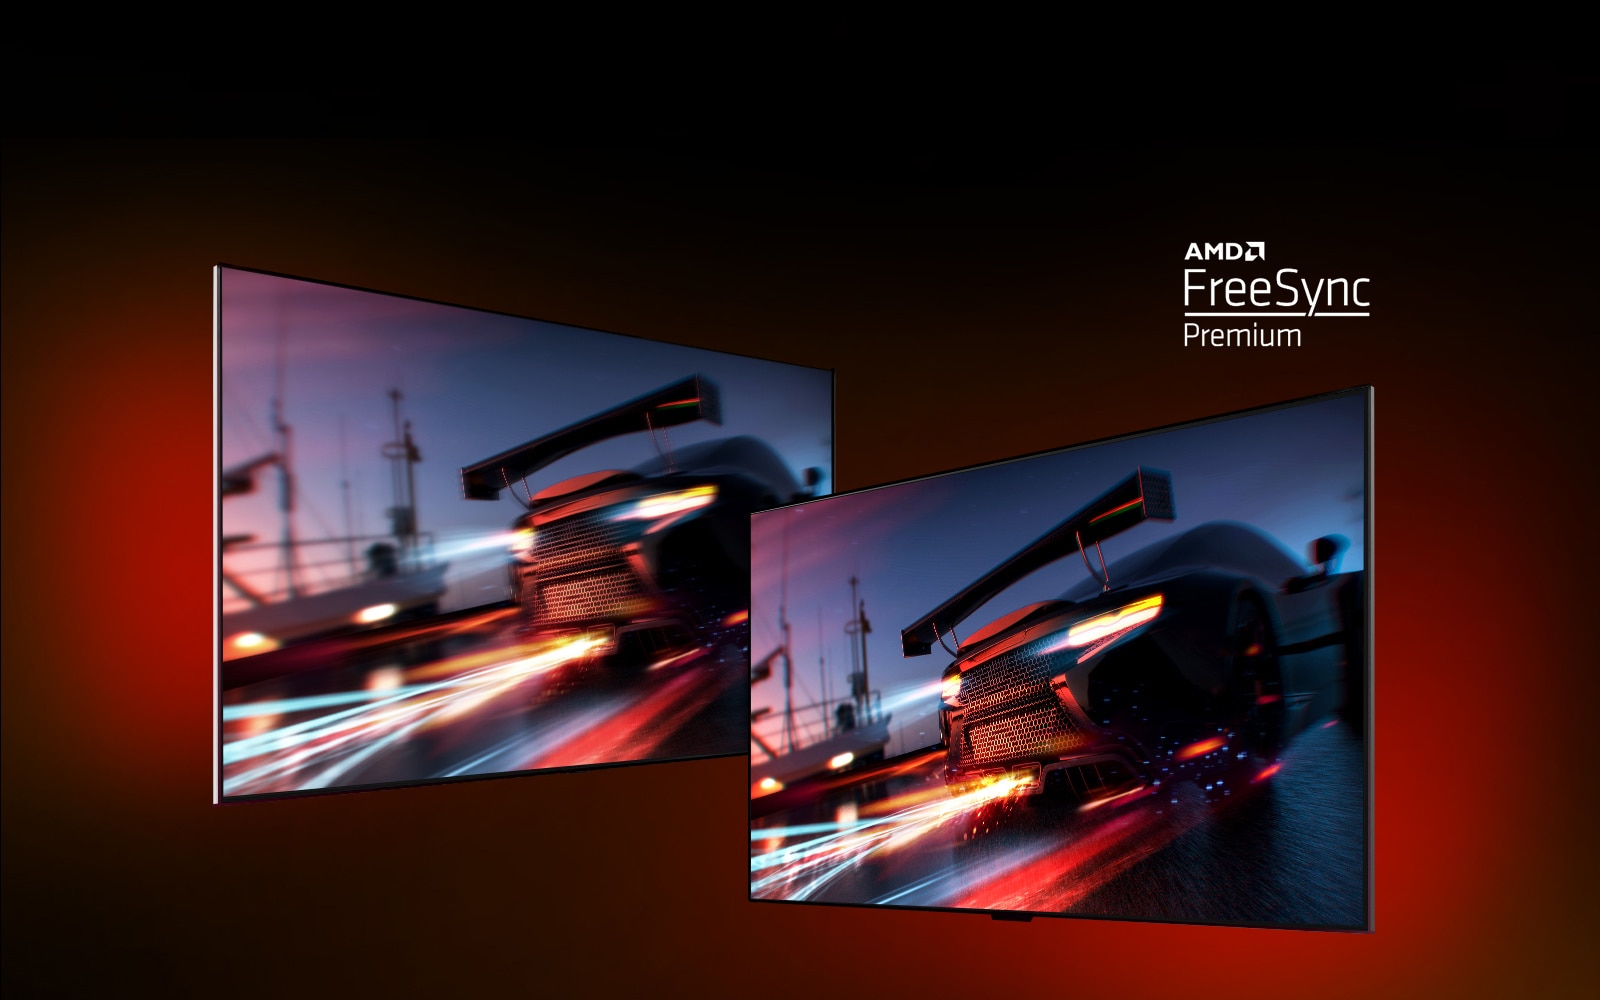 Deux téléviseurs sont affichés : celui de gauche montre une scène de jeu FORTNITE avec une voiture de course. Celui de droite montre la même scène de jeu, mais avec une image plus claire et plus nette. Dans le coin supérieur droit, le logo AMD FreeSync Premium est affiché.  